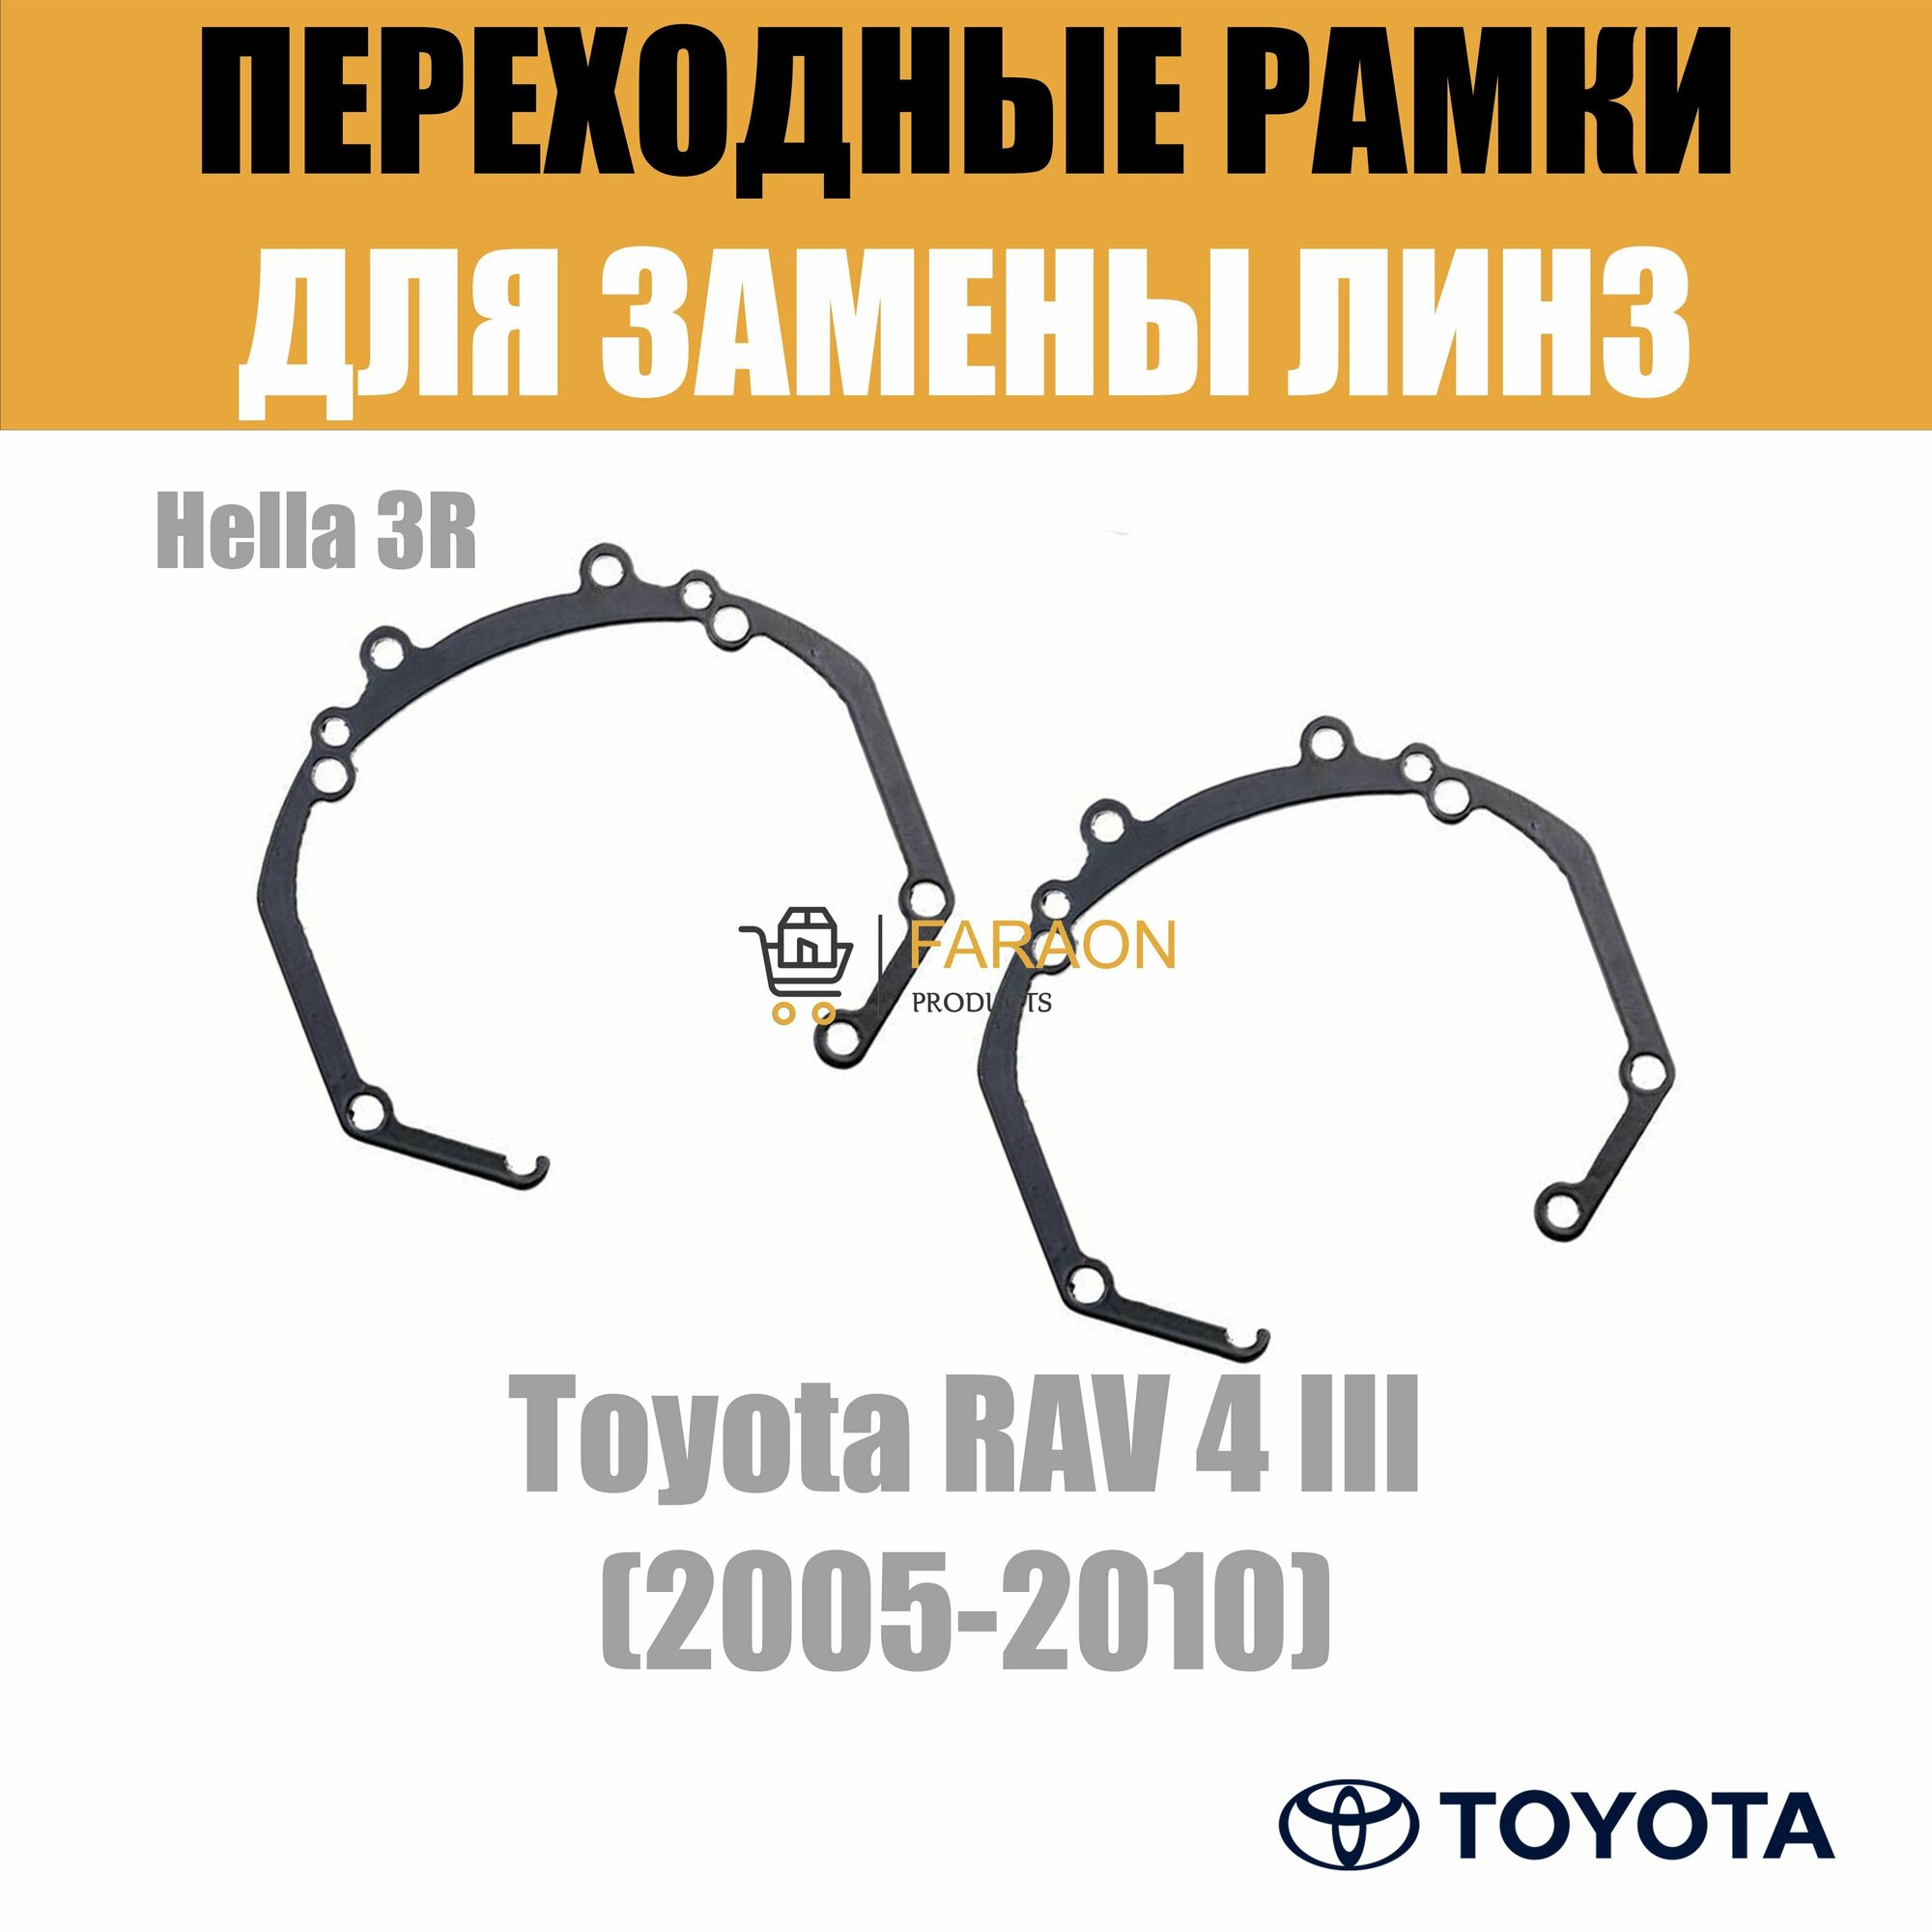 Переходные рамки для Toyota RAV 4 III (2005-2010) под модуль Hella 3R/Hella 3 (Комплект 2шт)